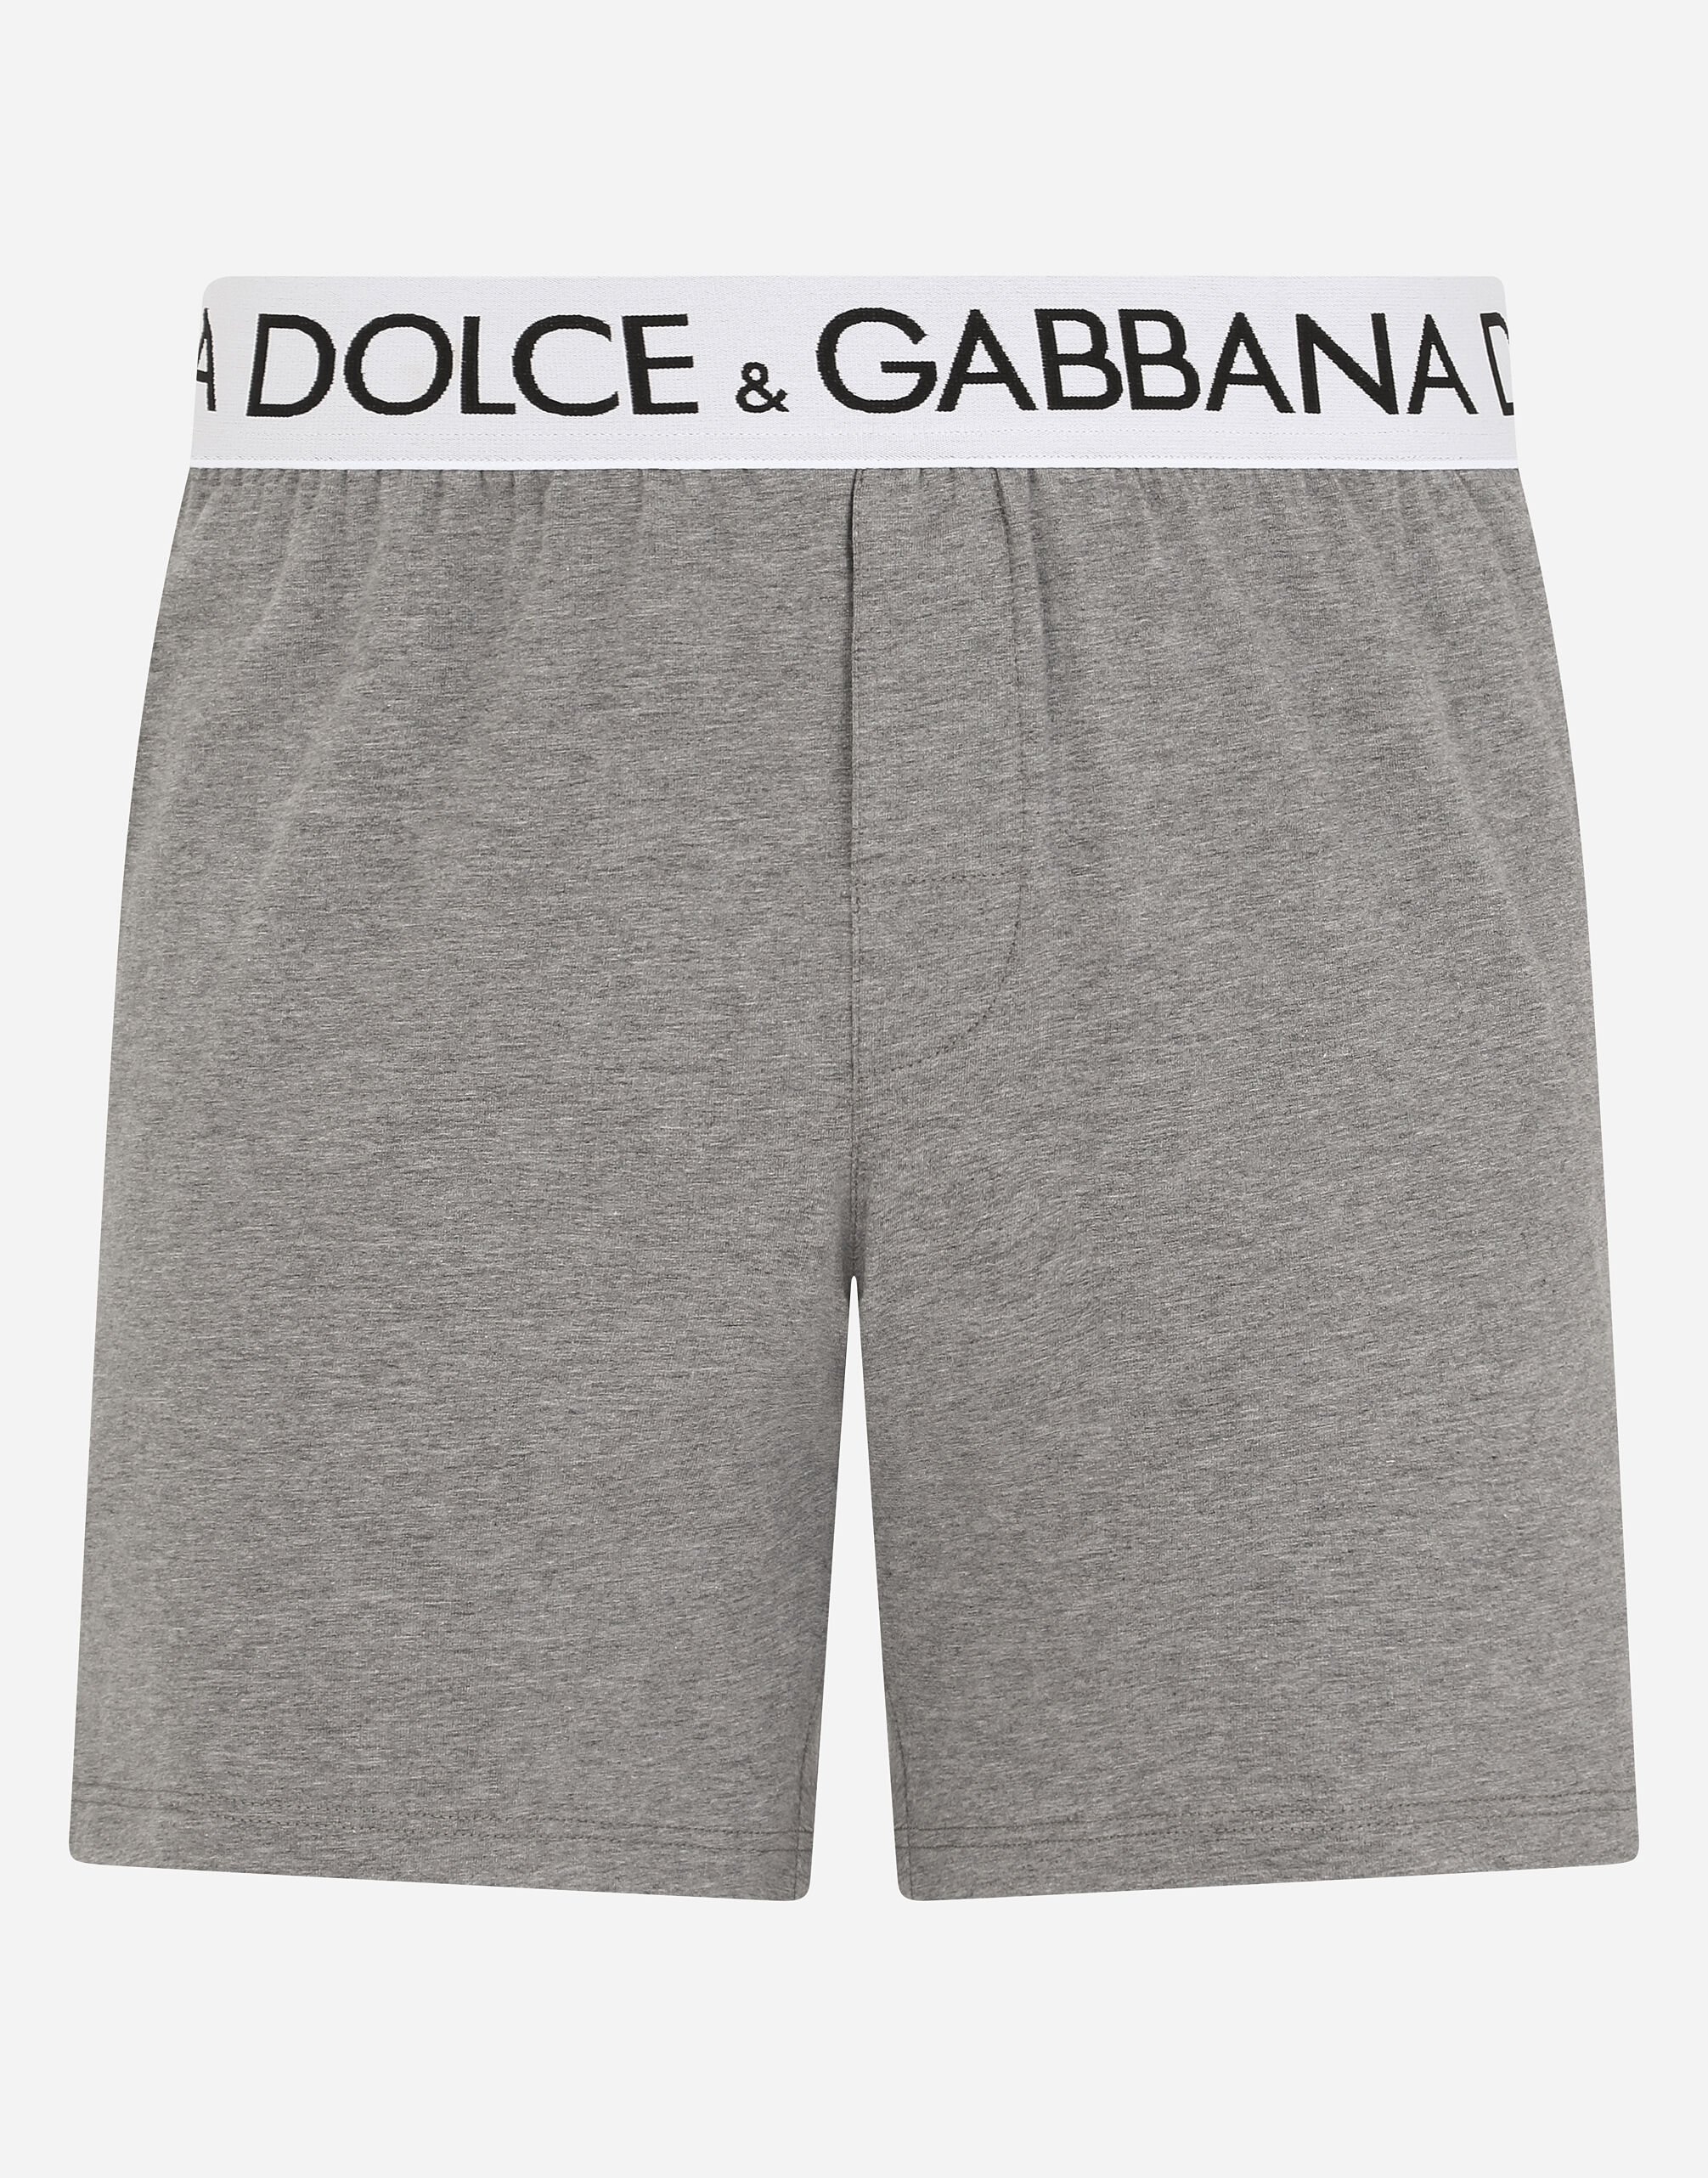 Dolce & Gabbana Two-way stretch cotton boxer shorts Grey M9C07JONN95